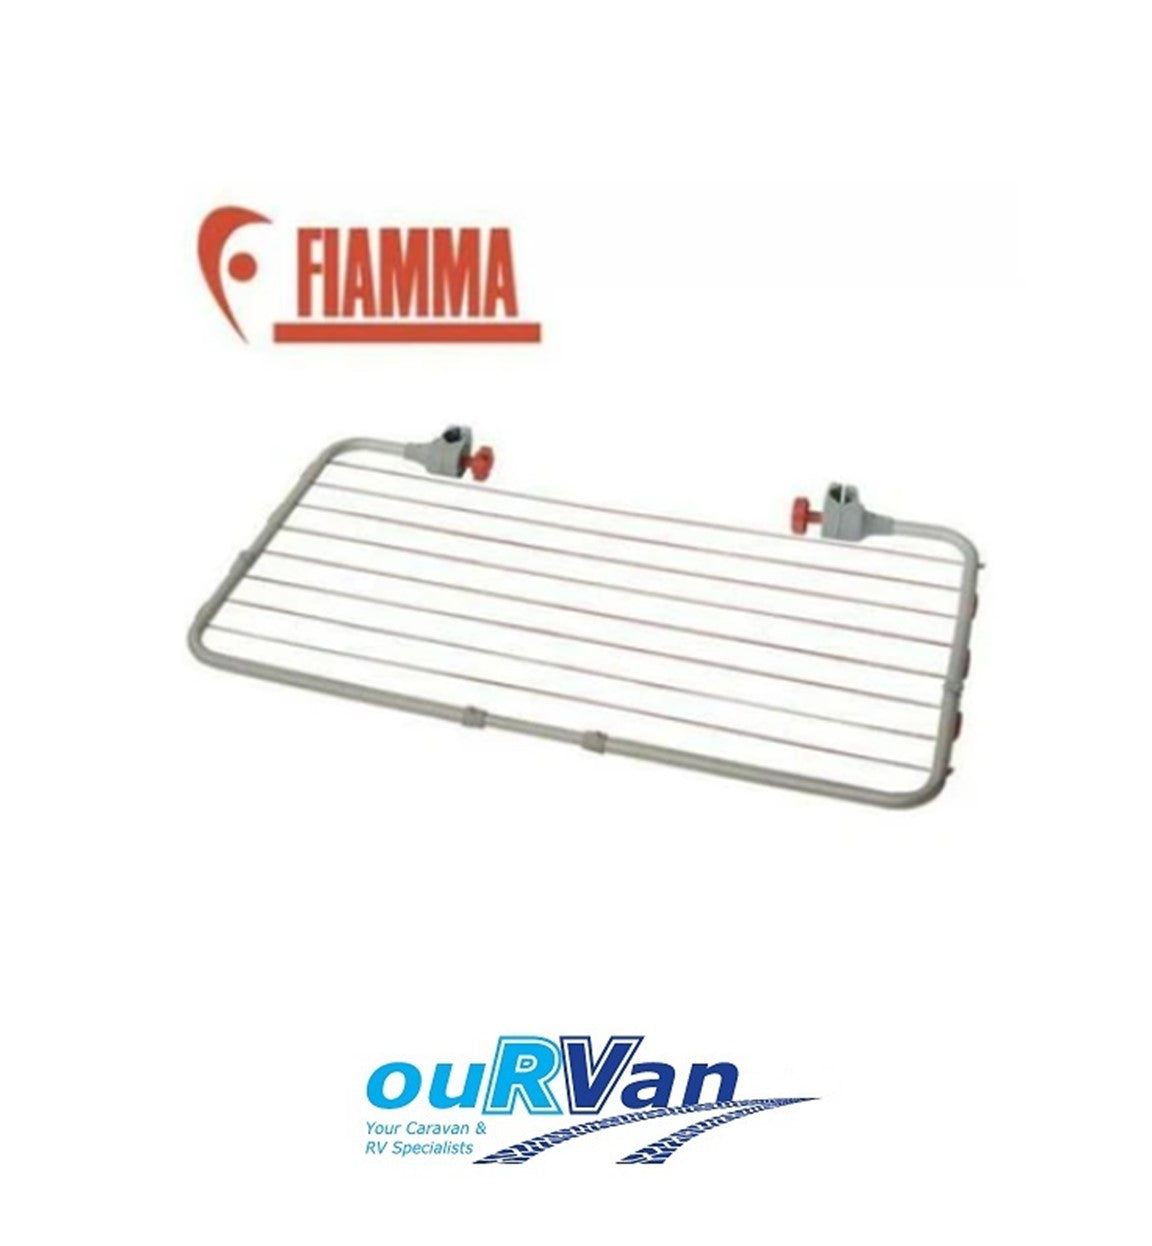 Fiamma 06306-01 Easy Dry Rack Clothes Line Caravan Motorhome RV 400-00495